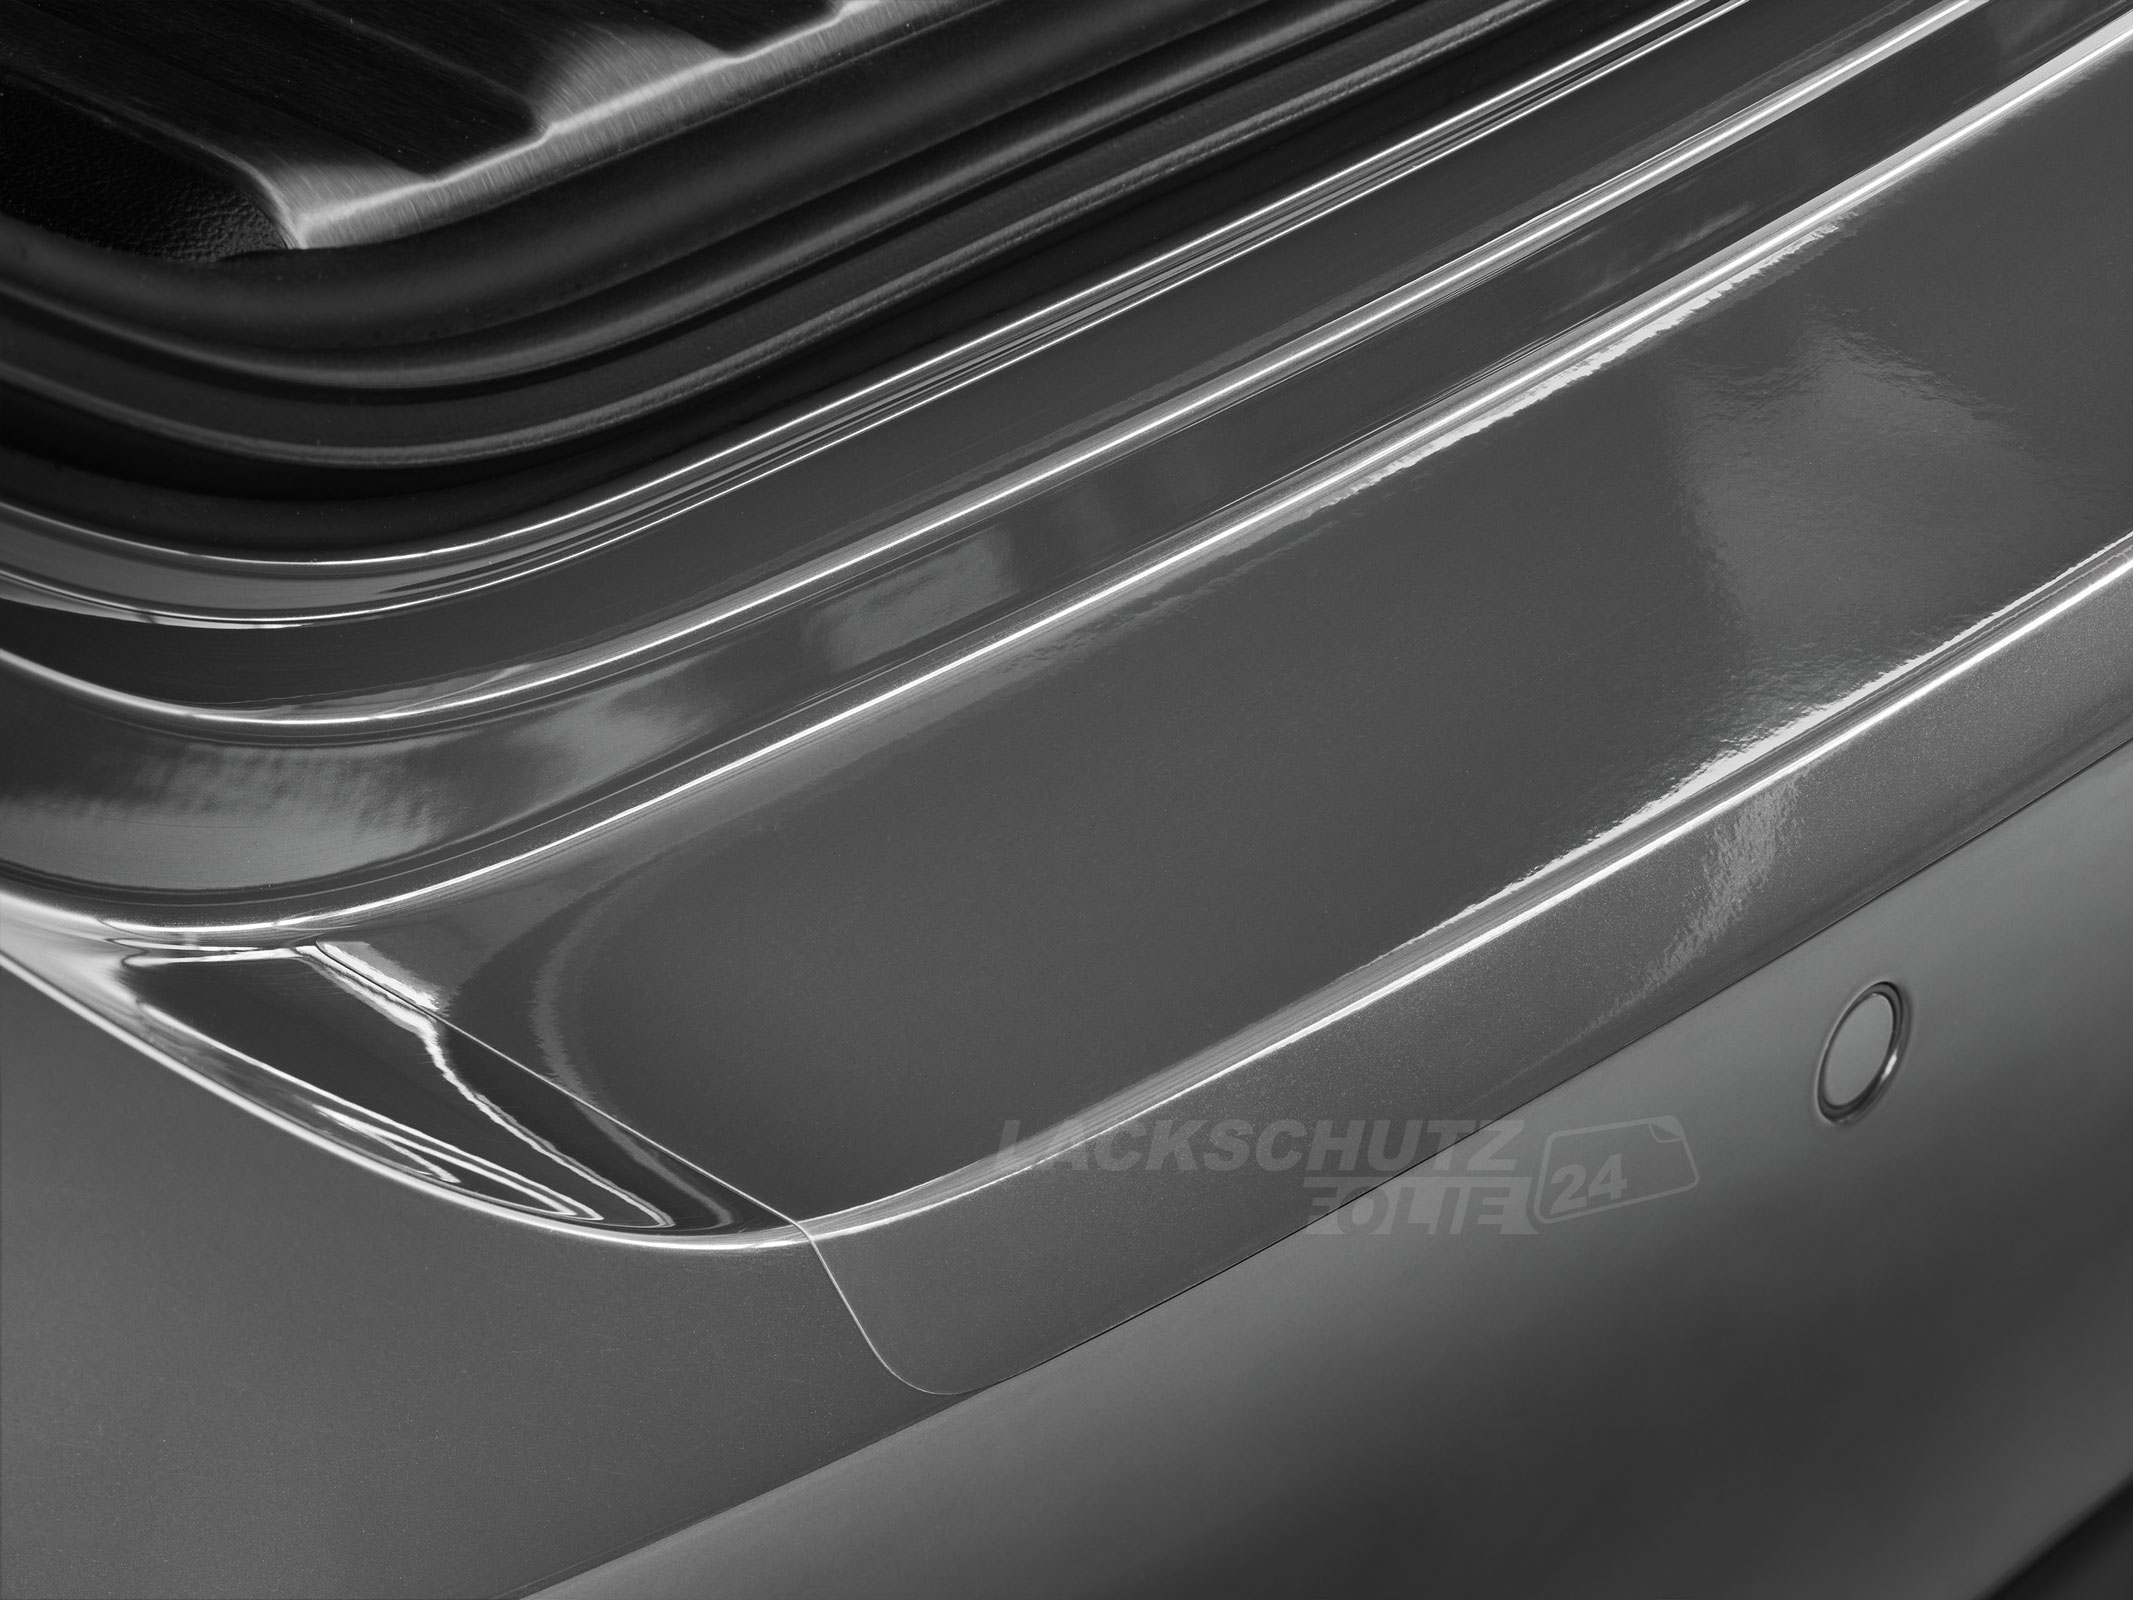 Ladekantenschutzfolie - Transparent Glatt Hochglänzend für BMW 7er Typ F01, BJ 2008-2015